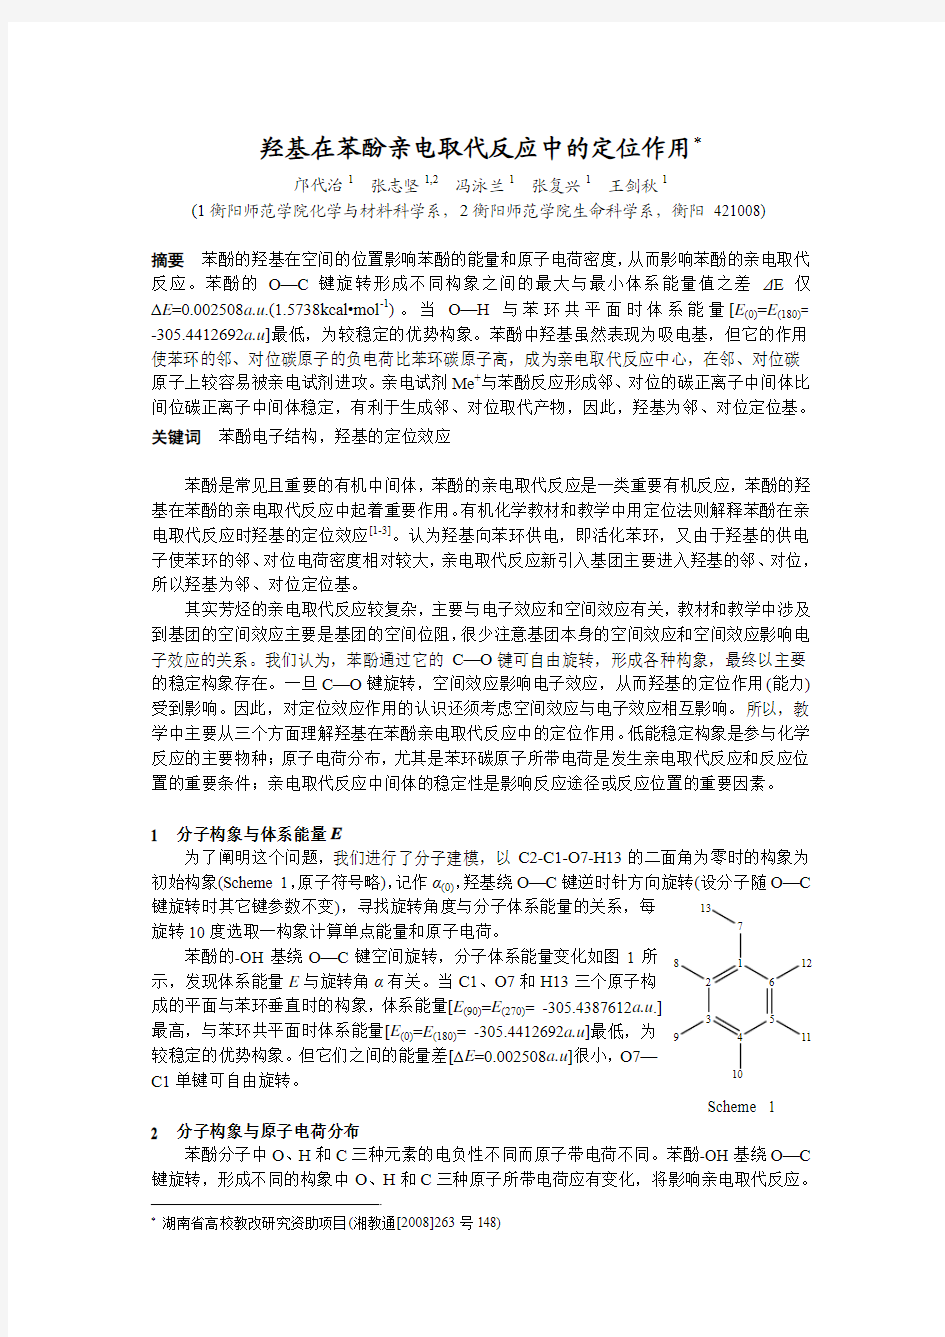 羟基在苯酚亲电取代反应中的定位作用